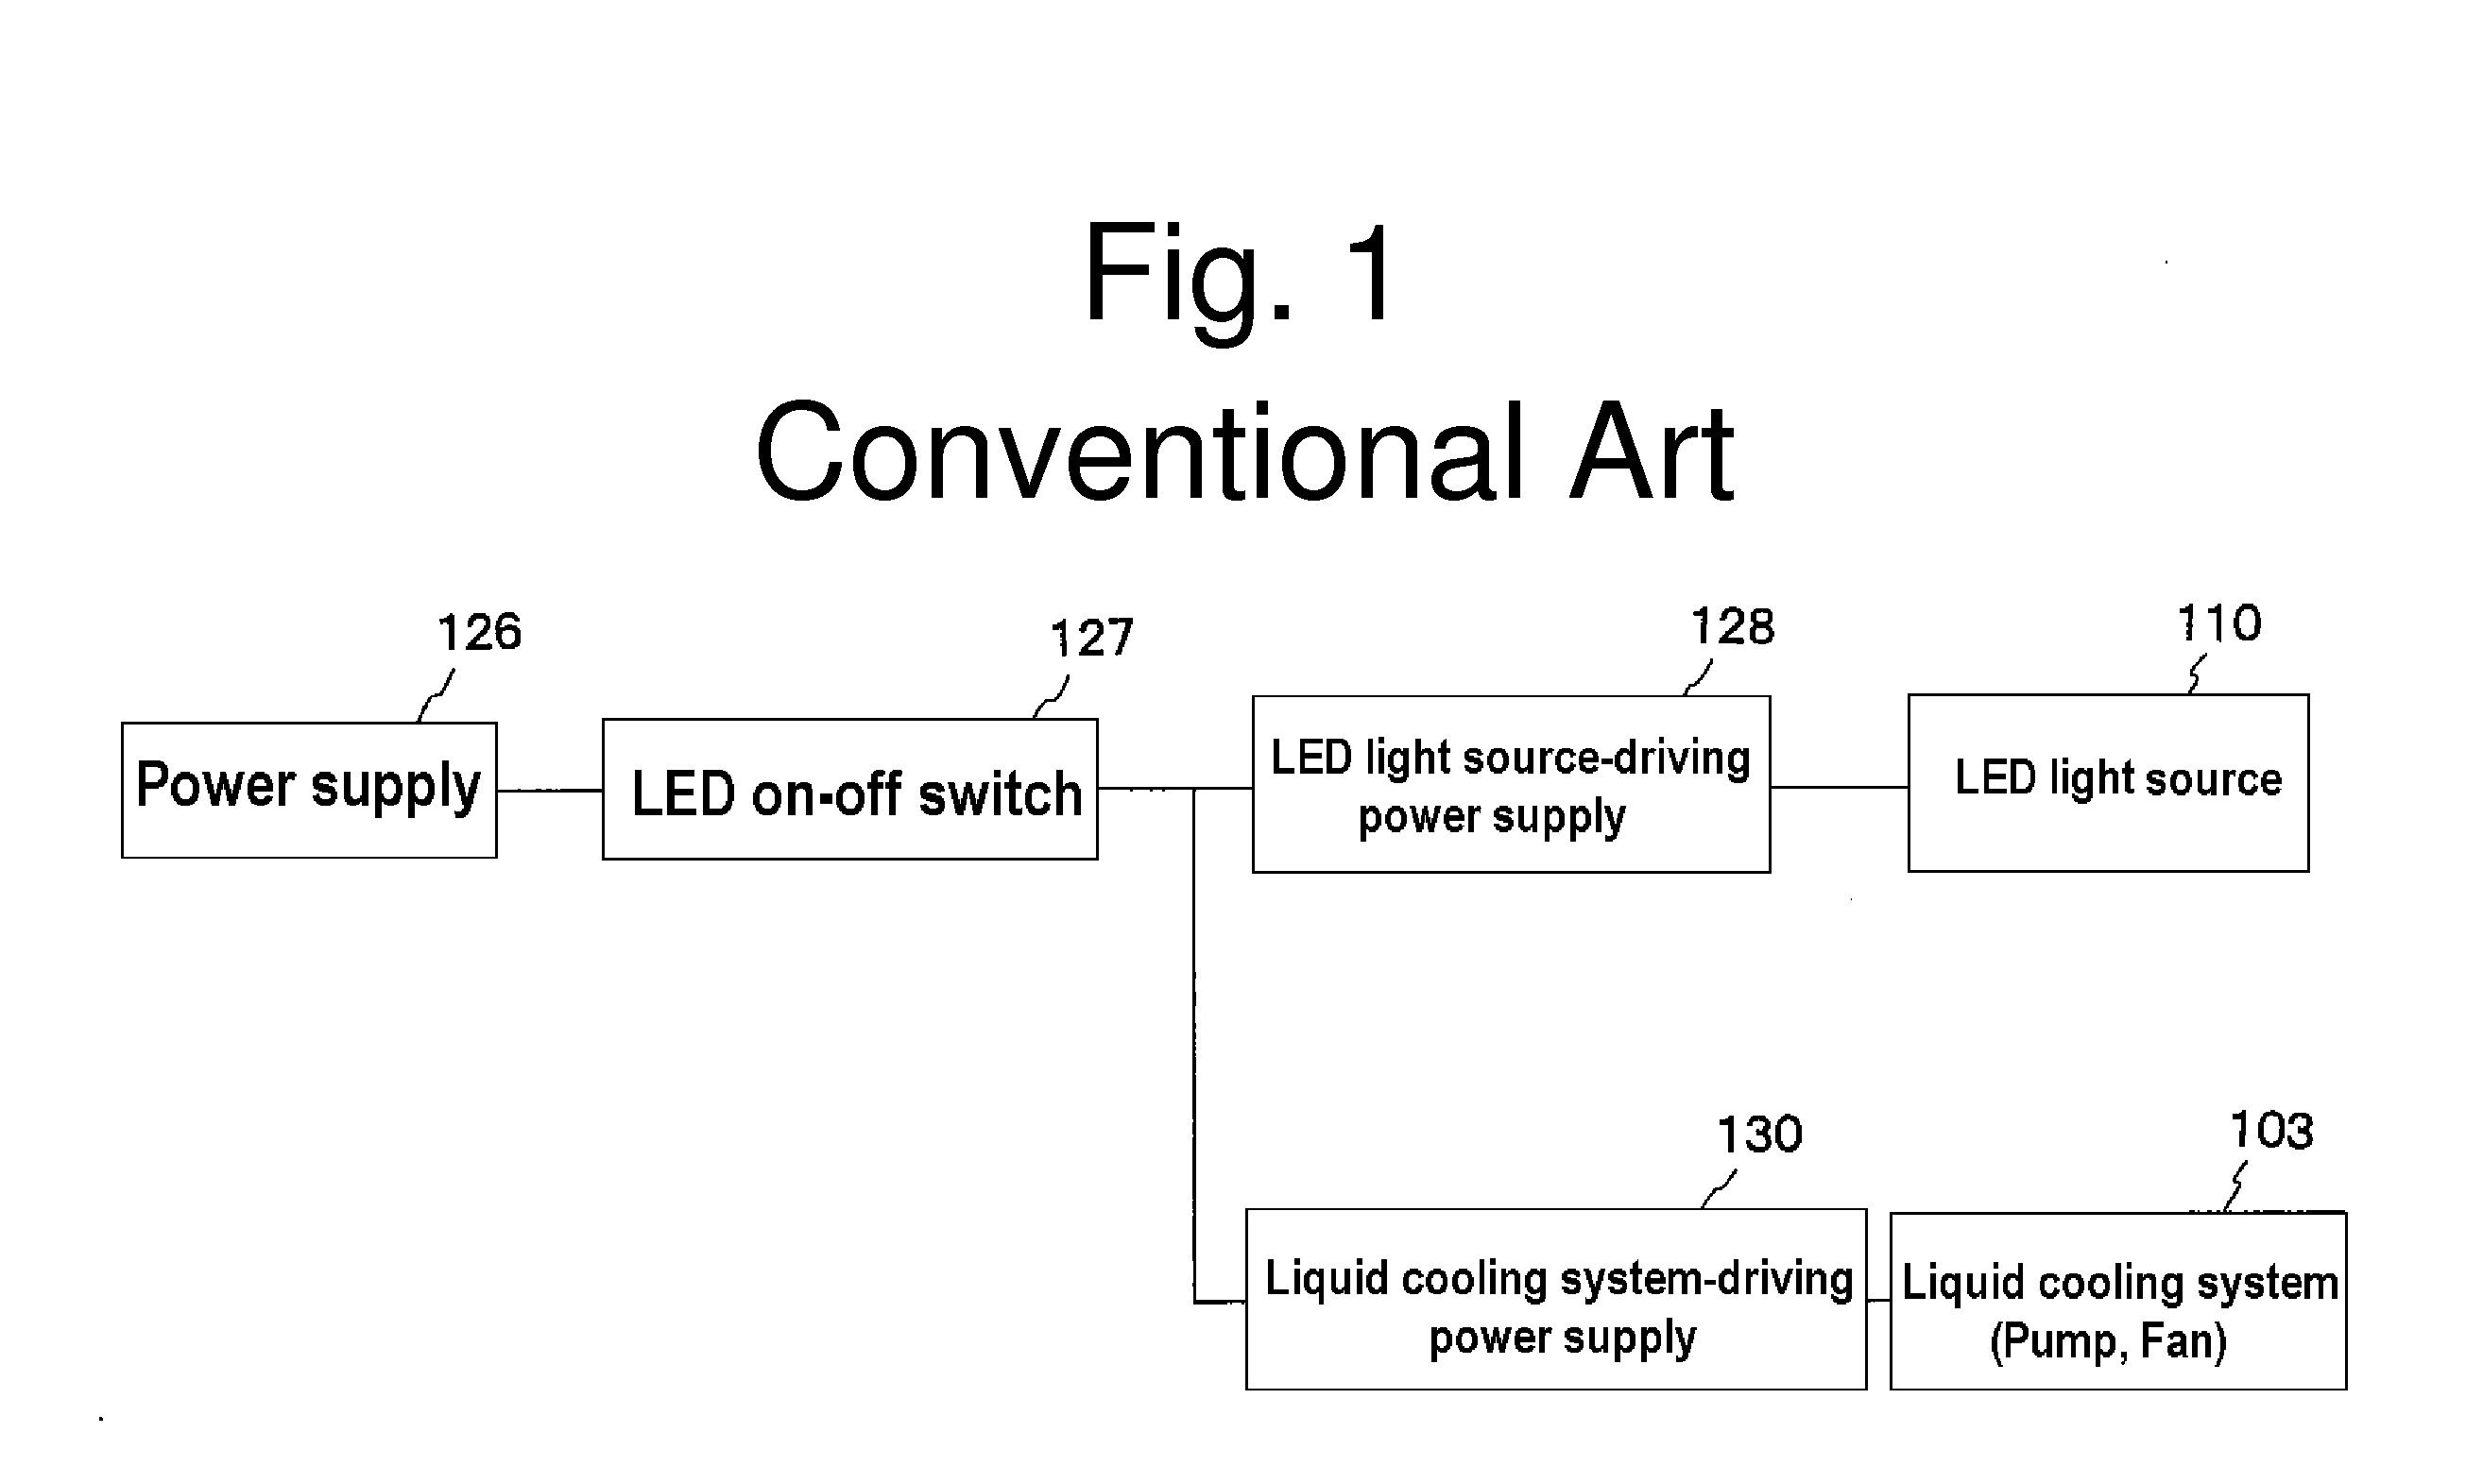 Liquid-cooled LED lighting device